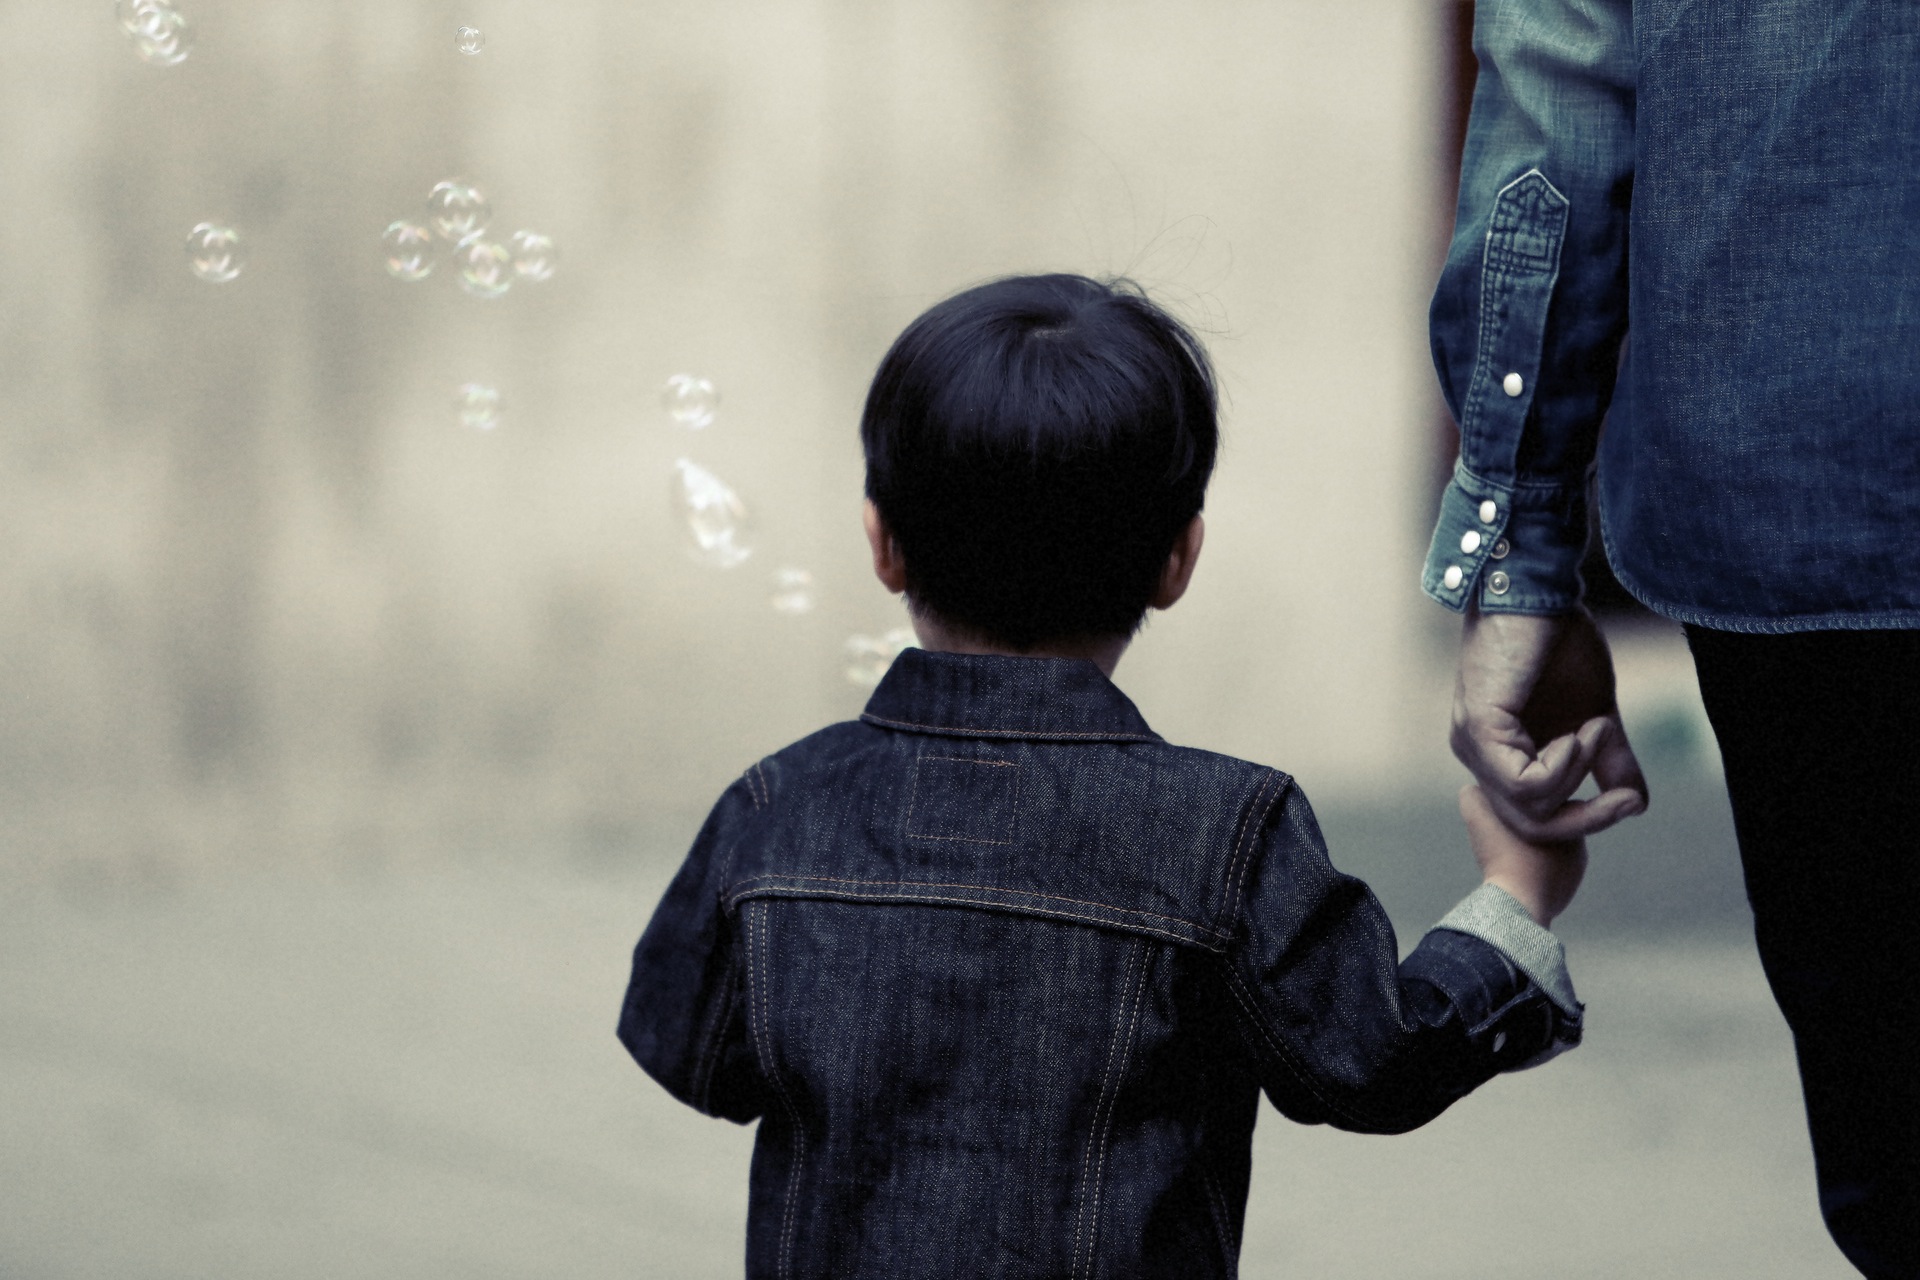 1 στους 2 γονείς παθαίνουν κατάθλιψη αν έχουν παιδί με διατροφική διαταραχή